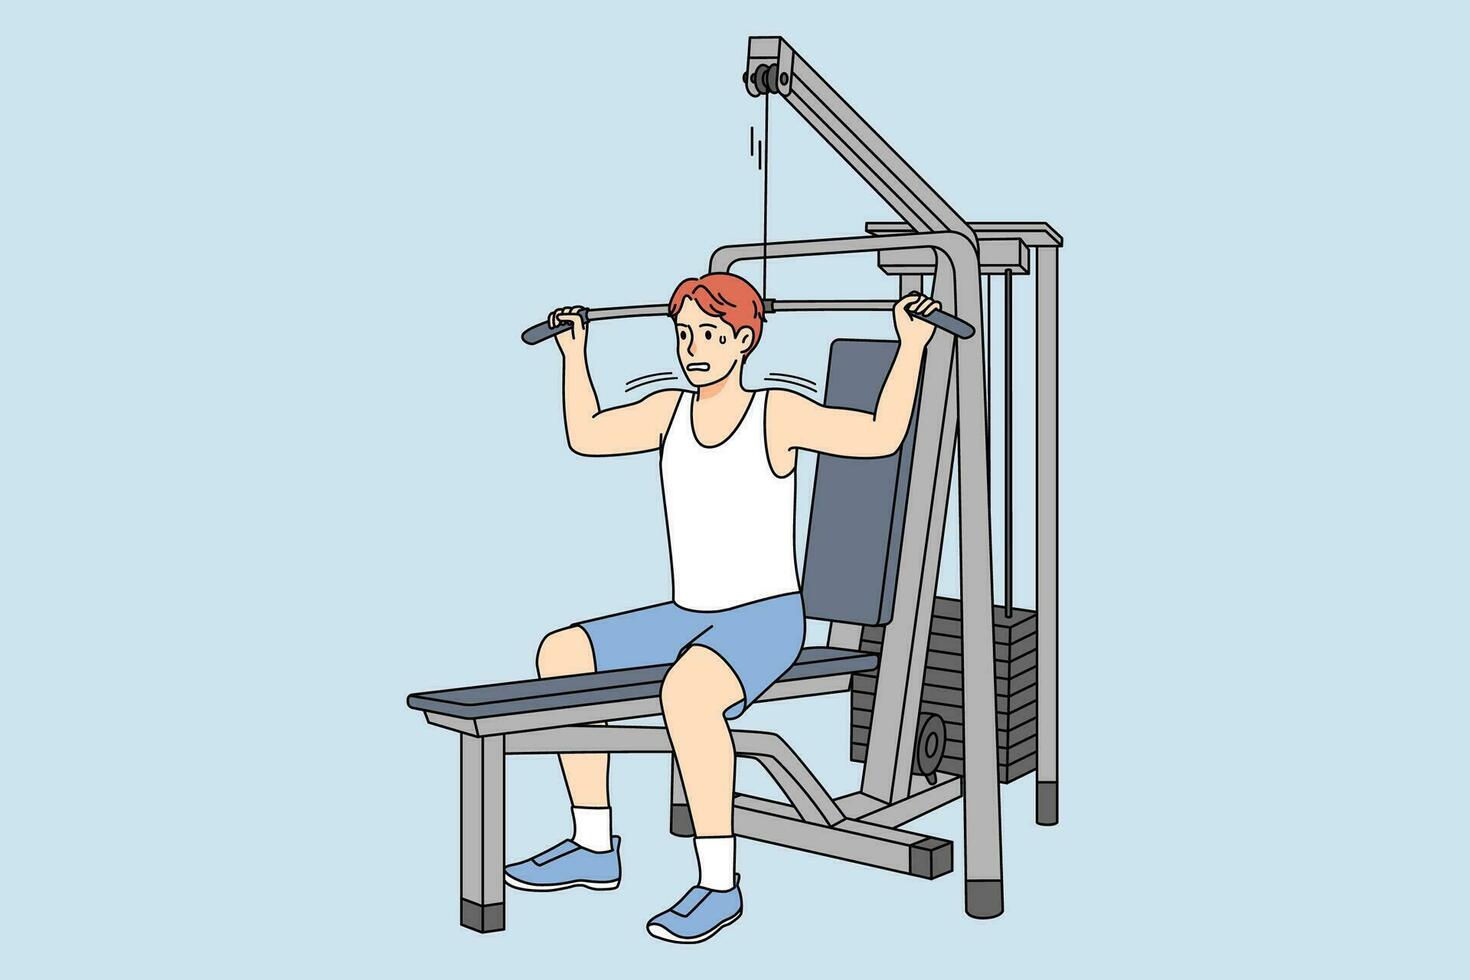 trött man Träning på sport Utrustning i Gym. olycklig utmattad manlig träna för Bra kropp form. övning och kondition begrepp. vektor illustration.